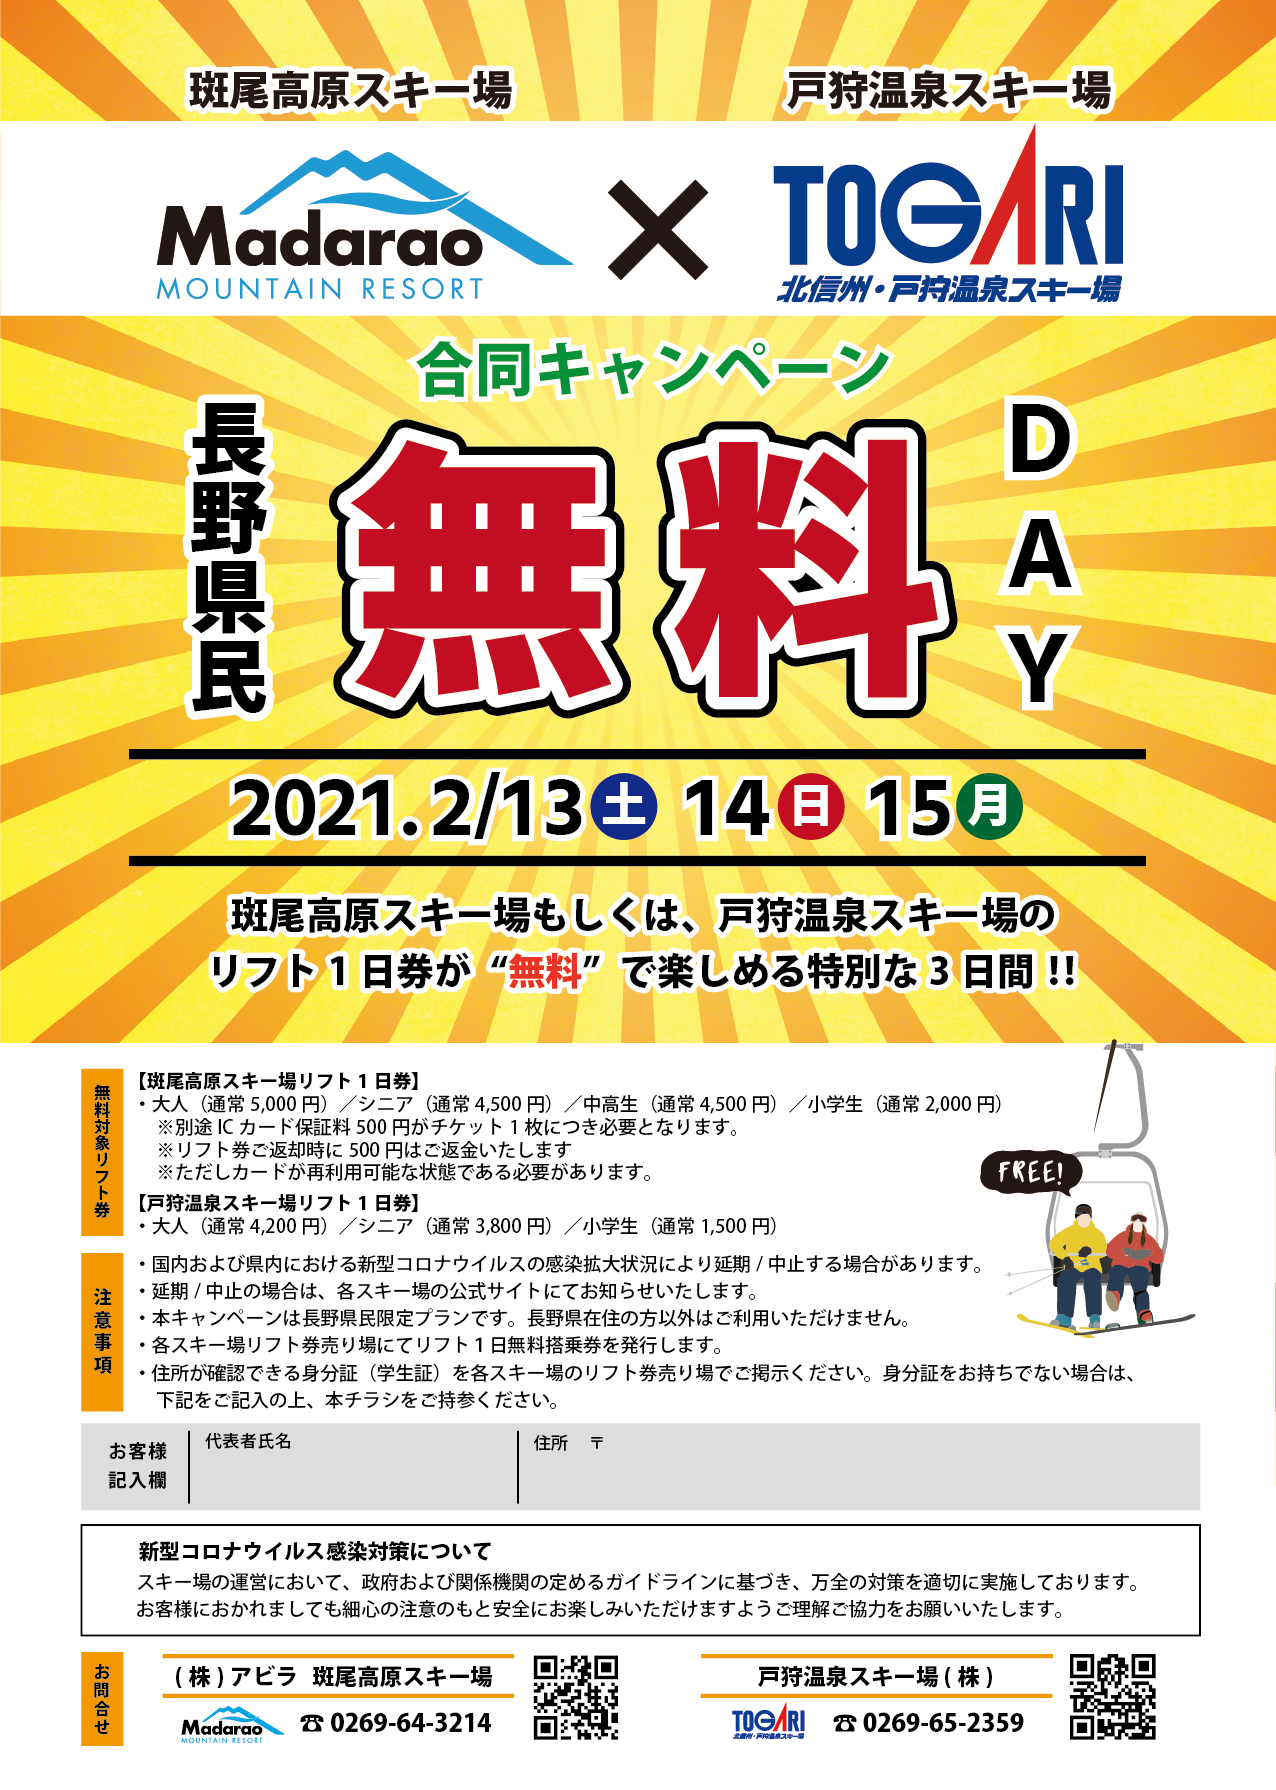 長野県民無料Day開催のお知らせ | スキーマガジン